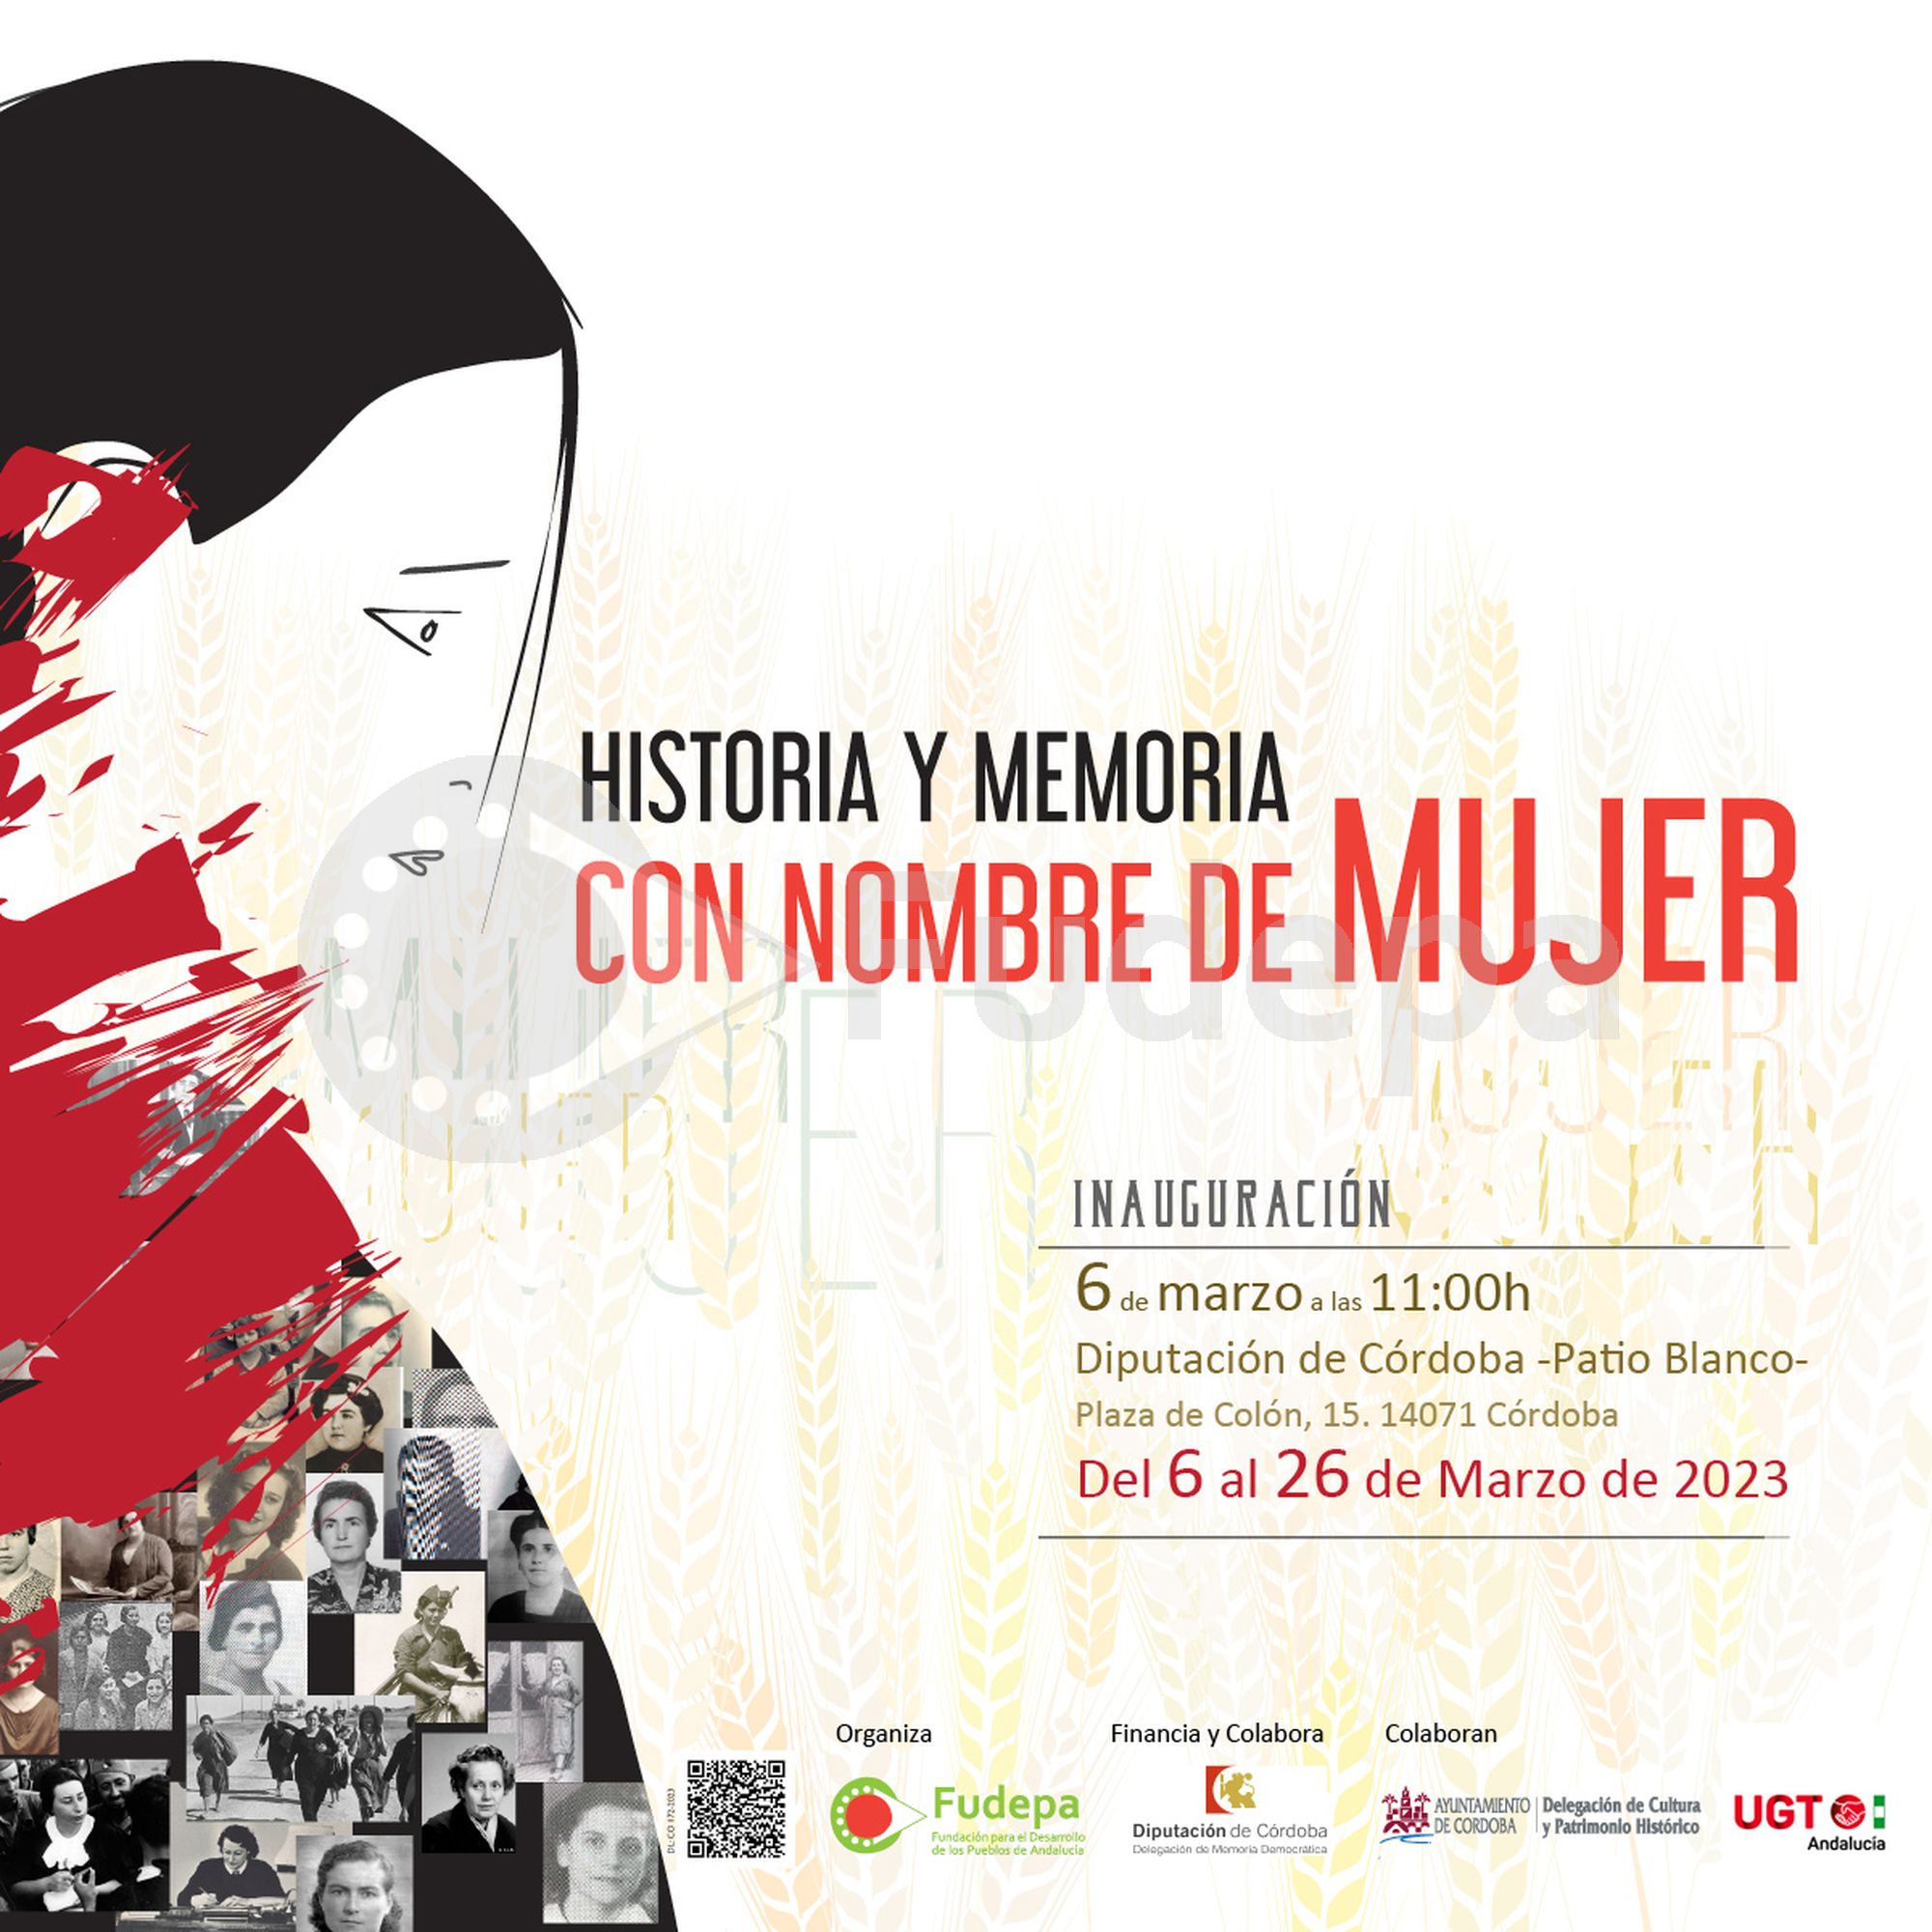 Inauguración de la exposición "HISTORIA Y MEMORIA CON NOMBRE DE MUJER"